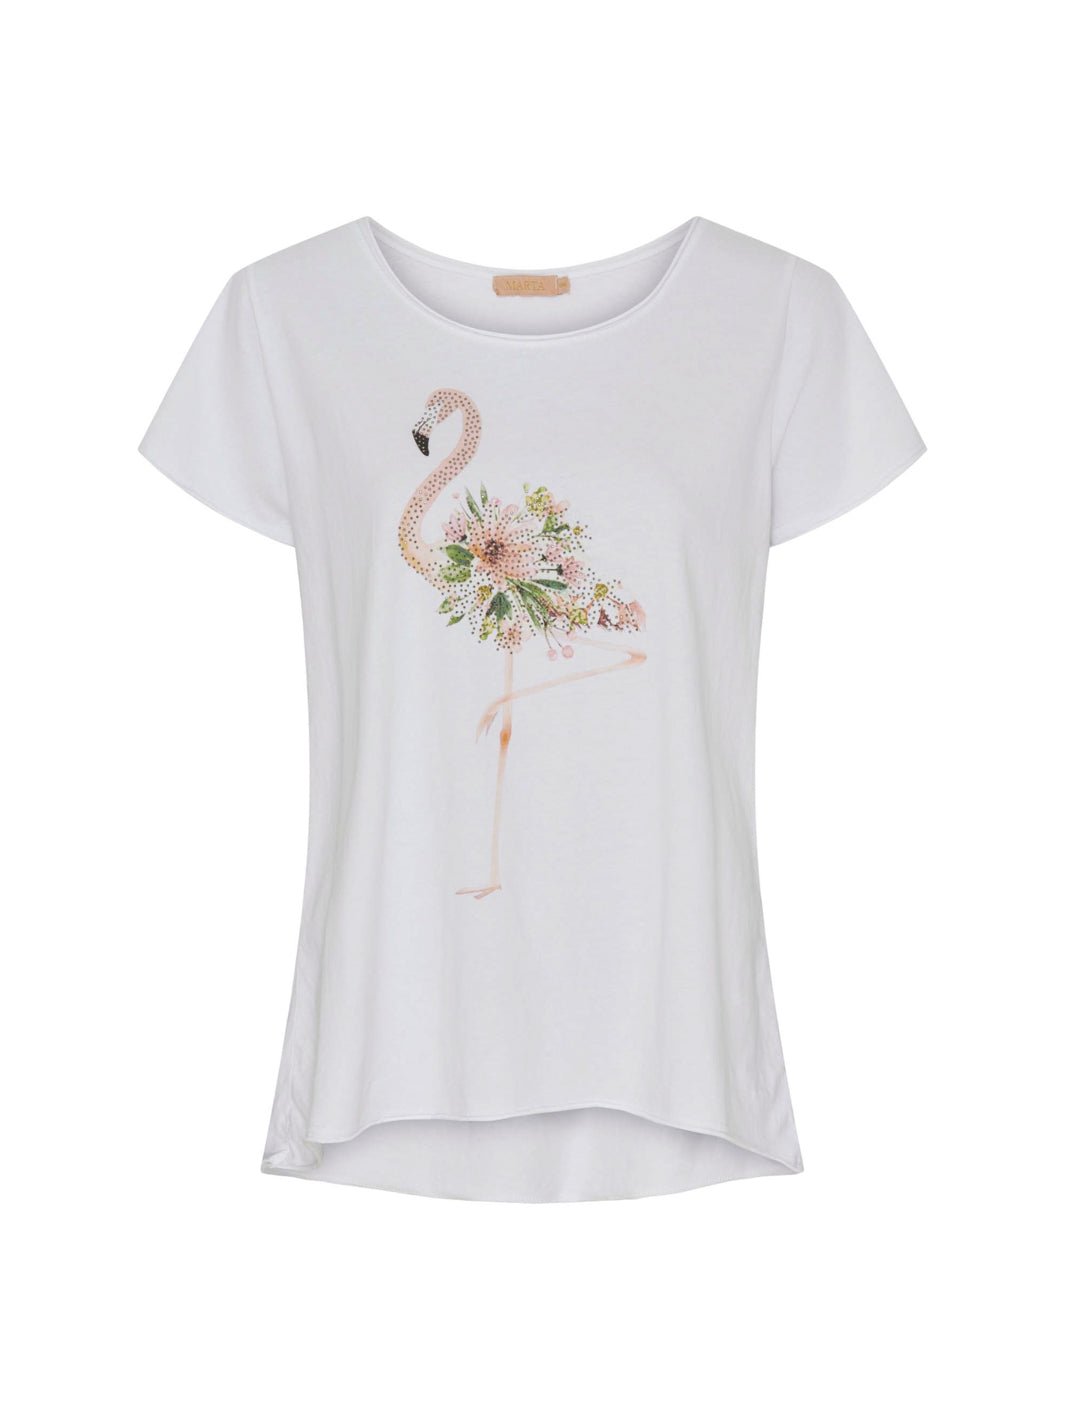 Marta du Chateau Marie 1535 t-shirt beige flamingo - Online-Mode